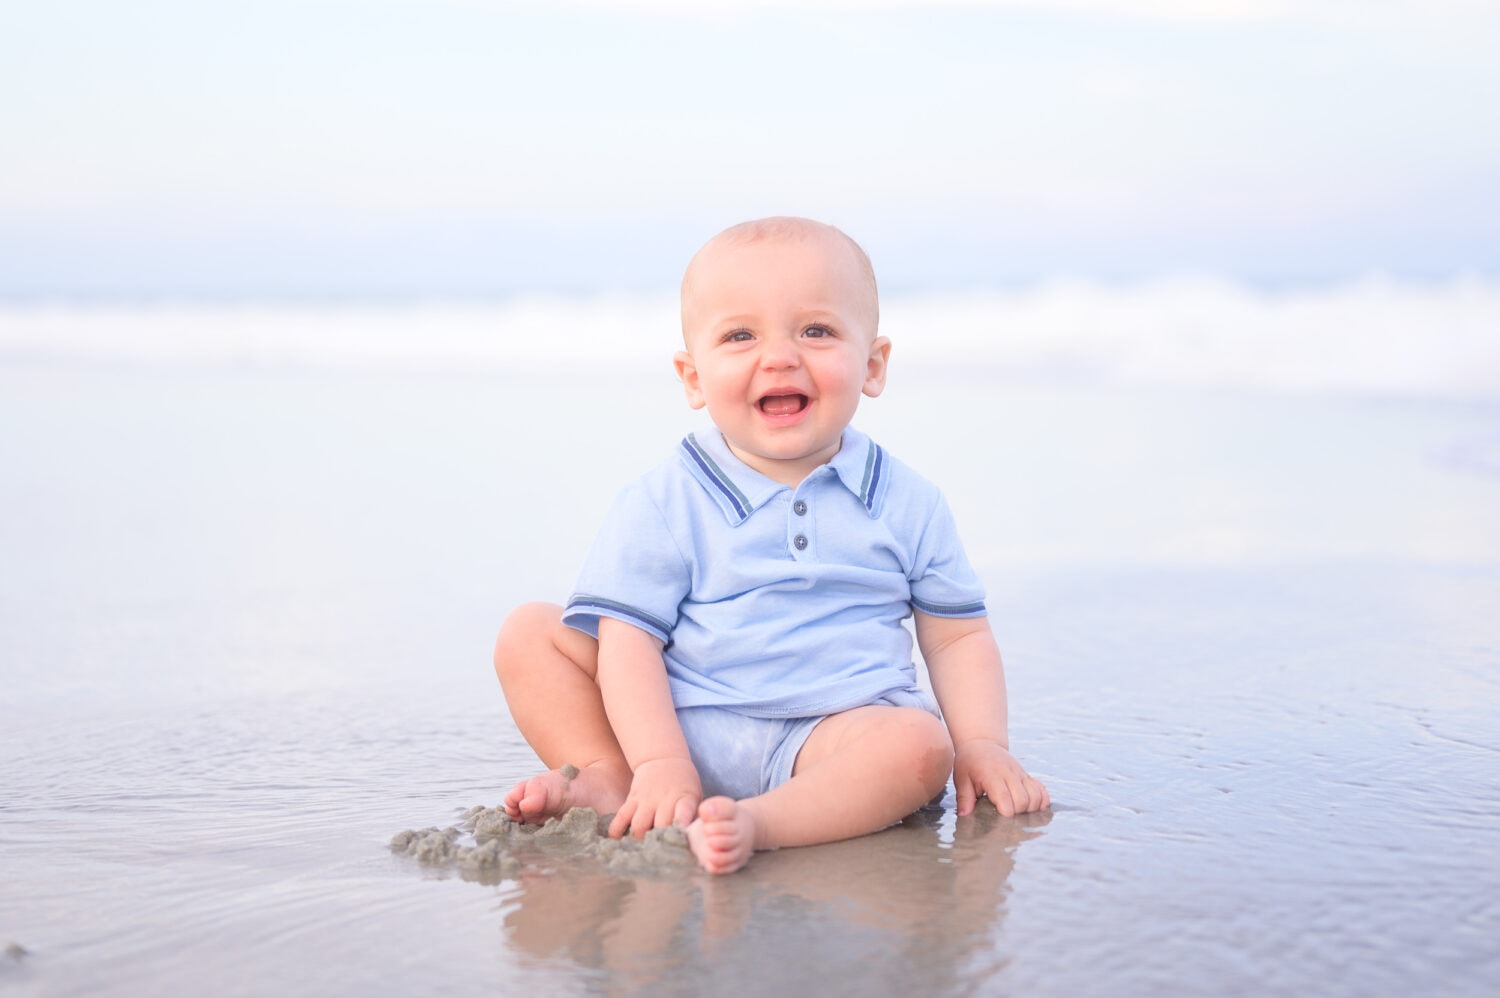 Very cute baby boys by the ocean - Myrtle Beach